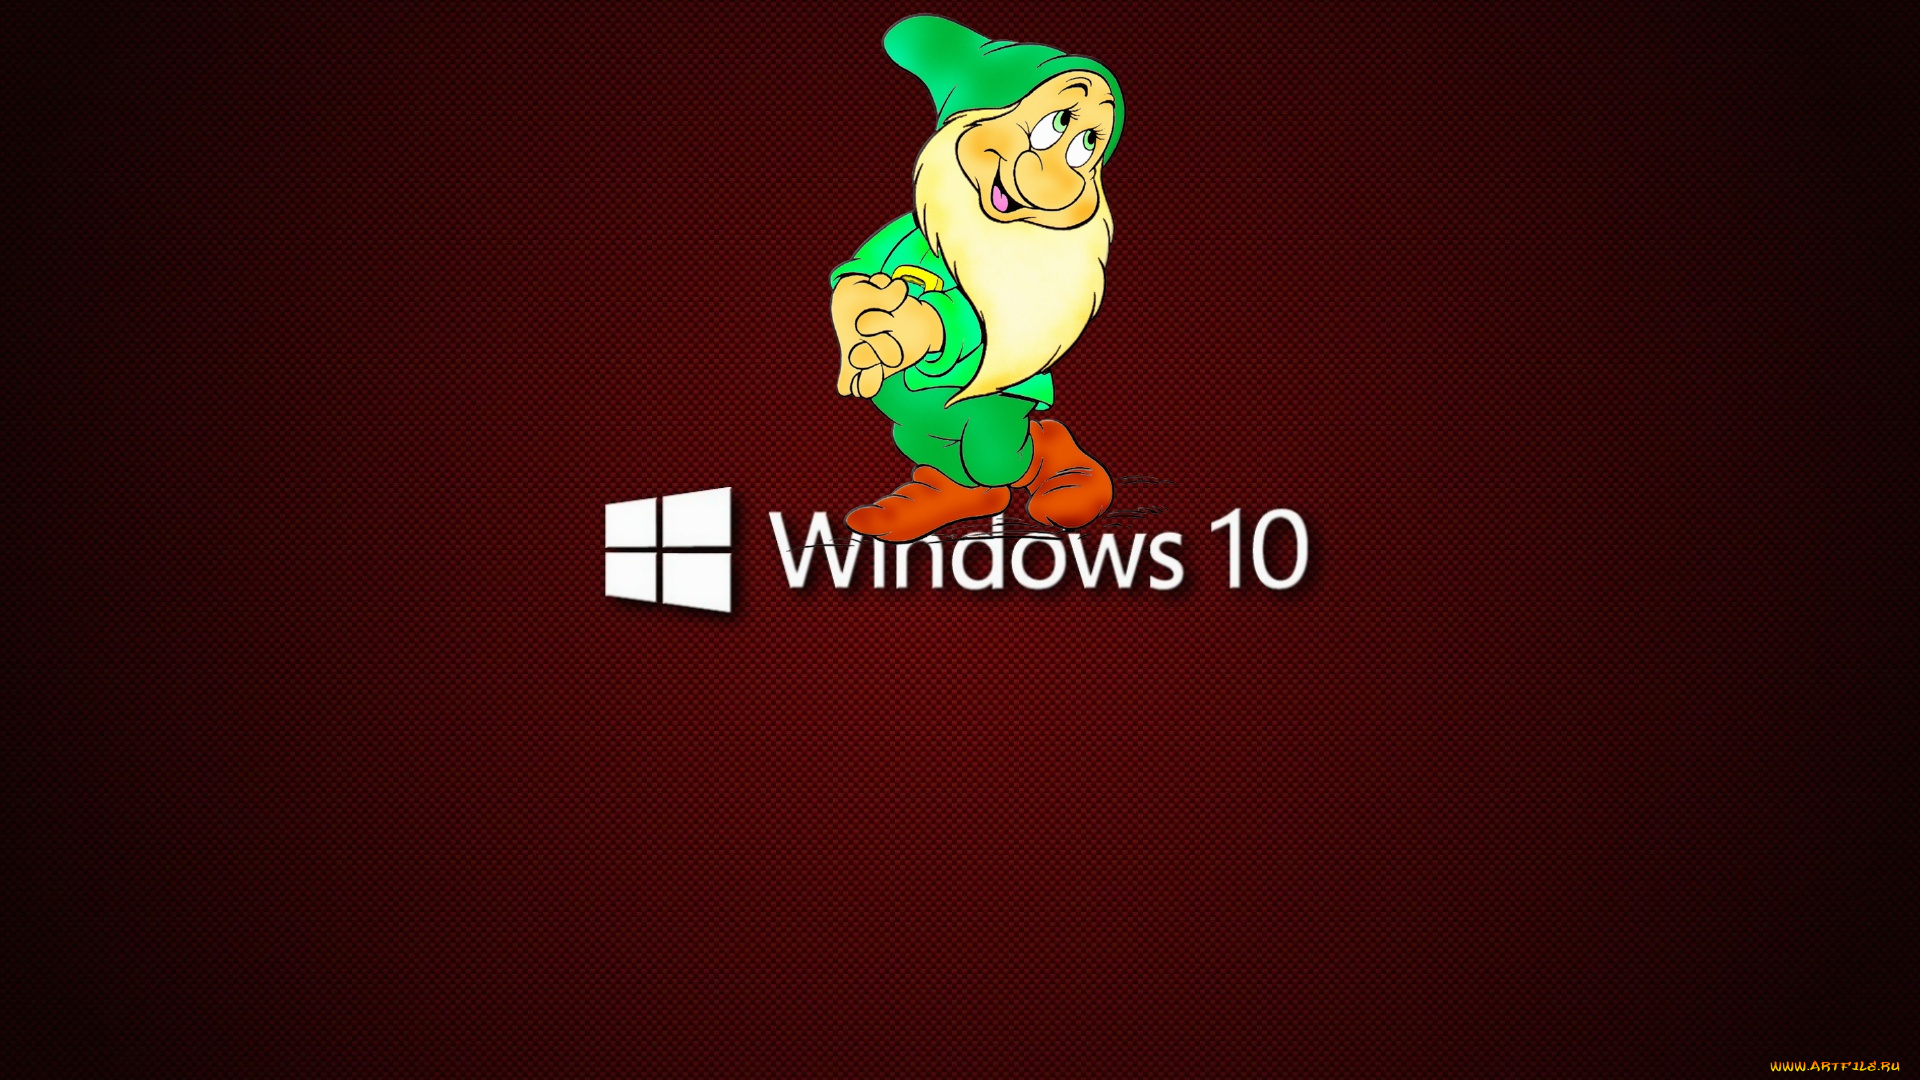 windows10, компьютеры, windows, 10, гномик, скромность